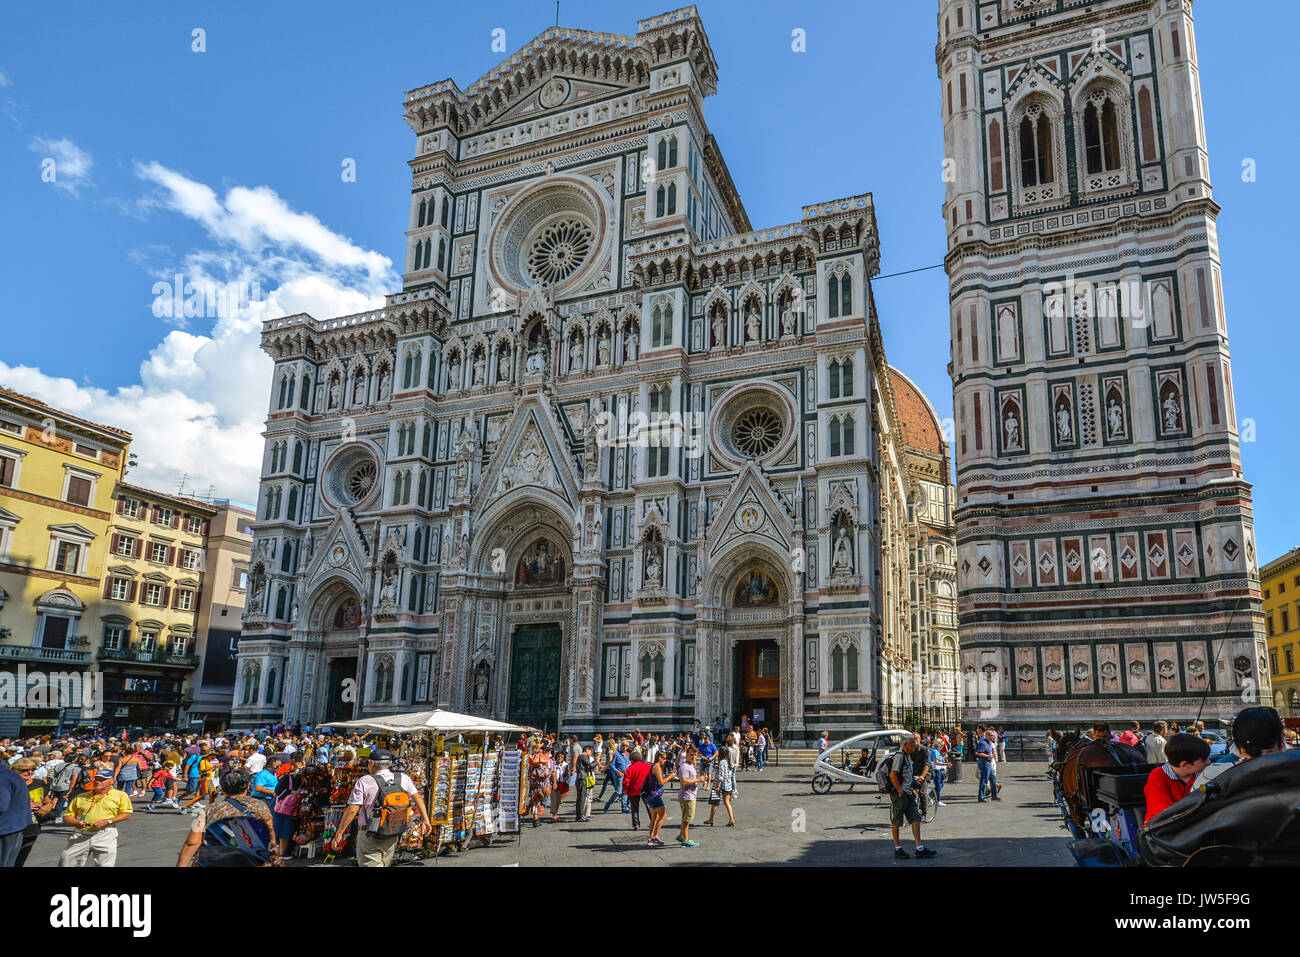 Le Duomo, la cathédrale de Florence et Giotto's Campanile sur la Piazza del Duomo, dans le centre historique de Florence Italie avec les touristes et se souvenir Banque D'Images